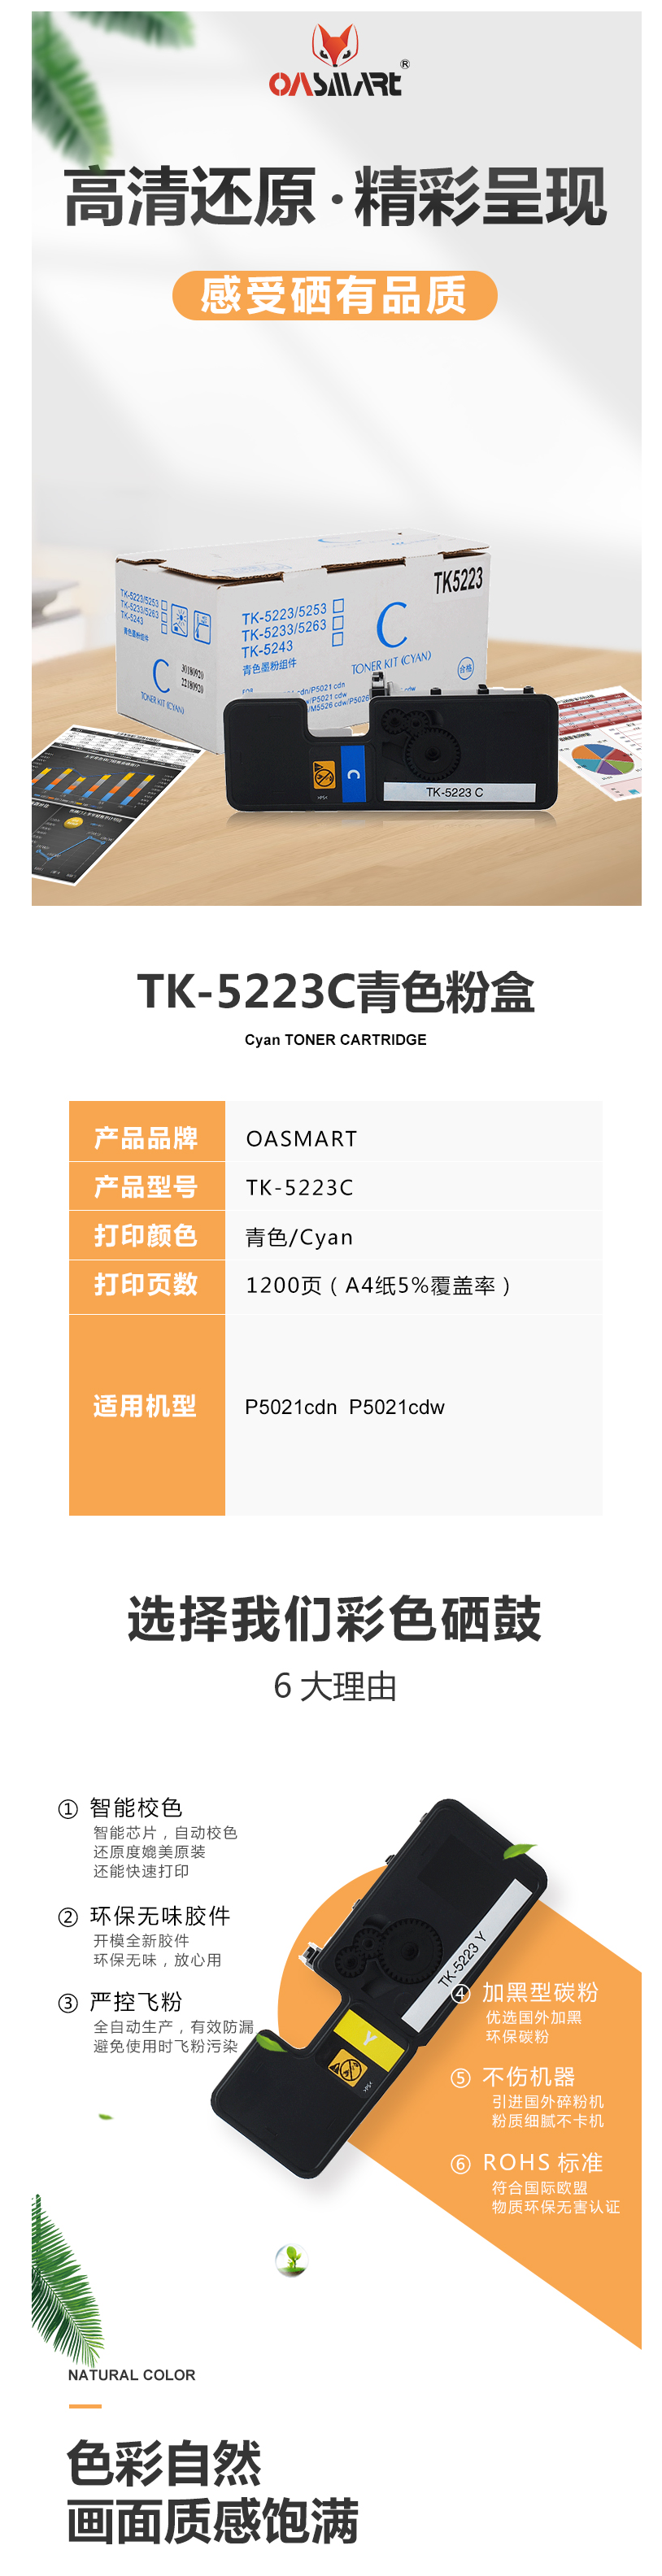 FireShot Capture 538 - 【OASMARTTK-5223C】OASMART（欧司特）TK-5223_ - https___item.jd.com_100016360016.html.png